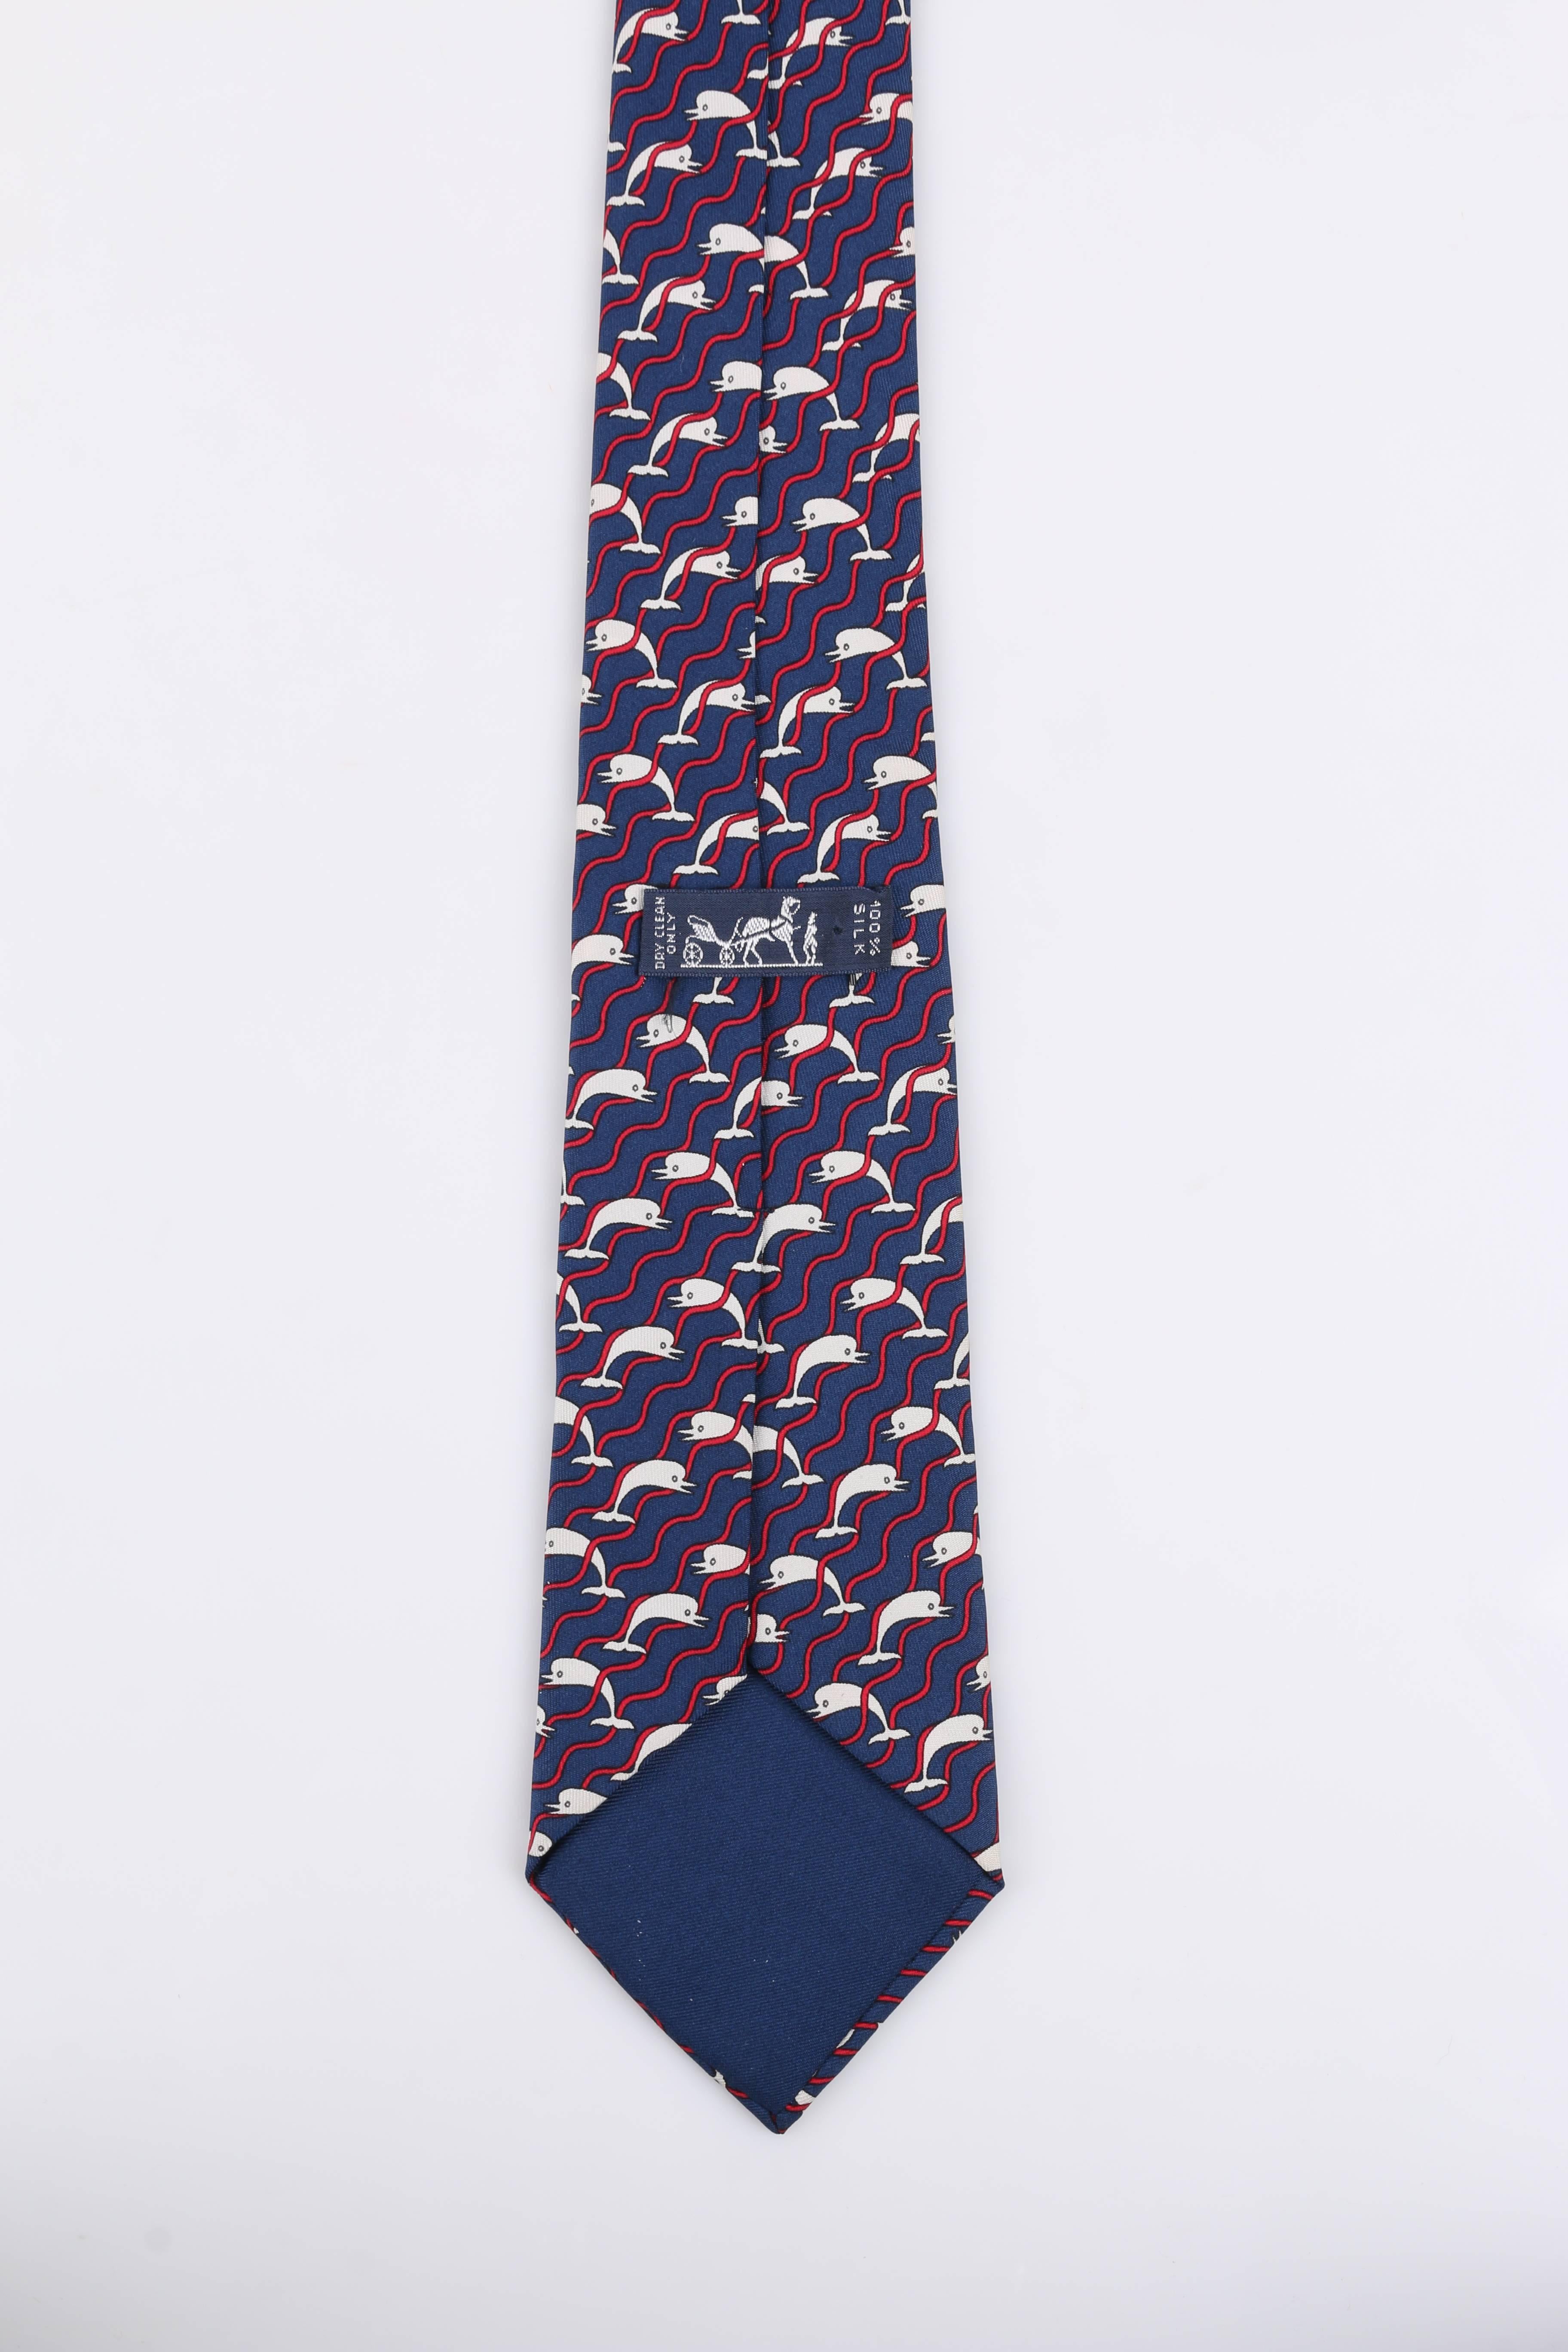 HERMES 5 Fold Navy Blue Dolphin Wave Stripe Print Silk Necktie Tie 987 SA 1